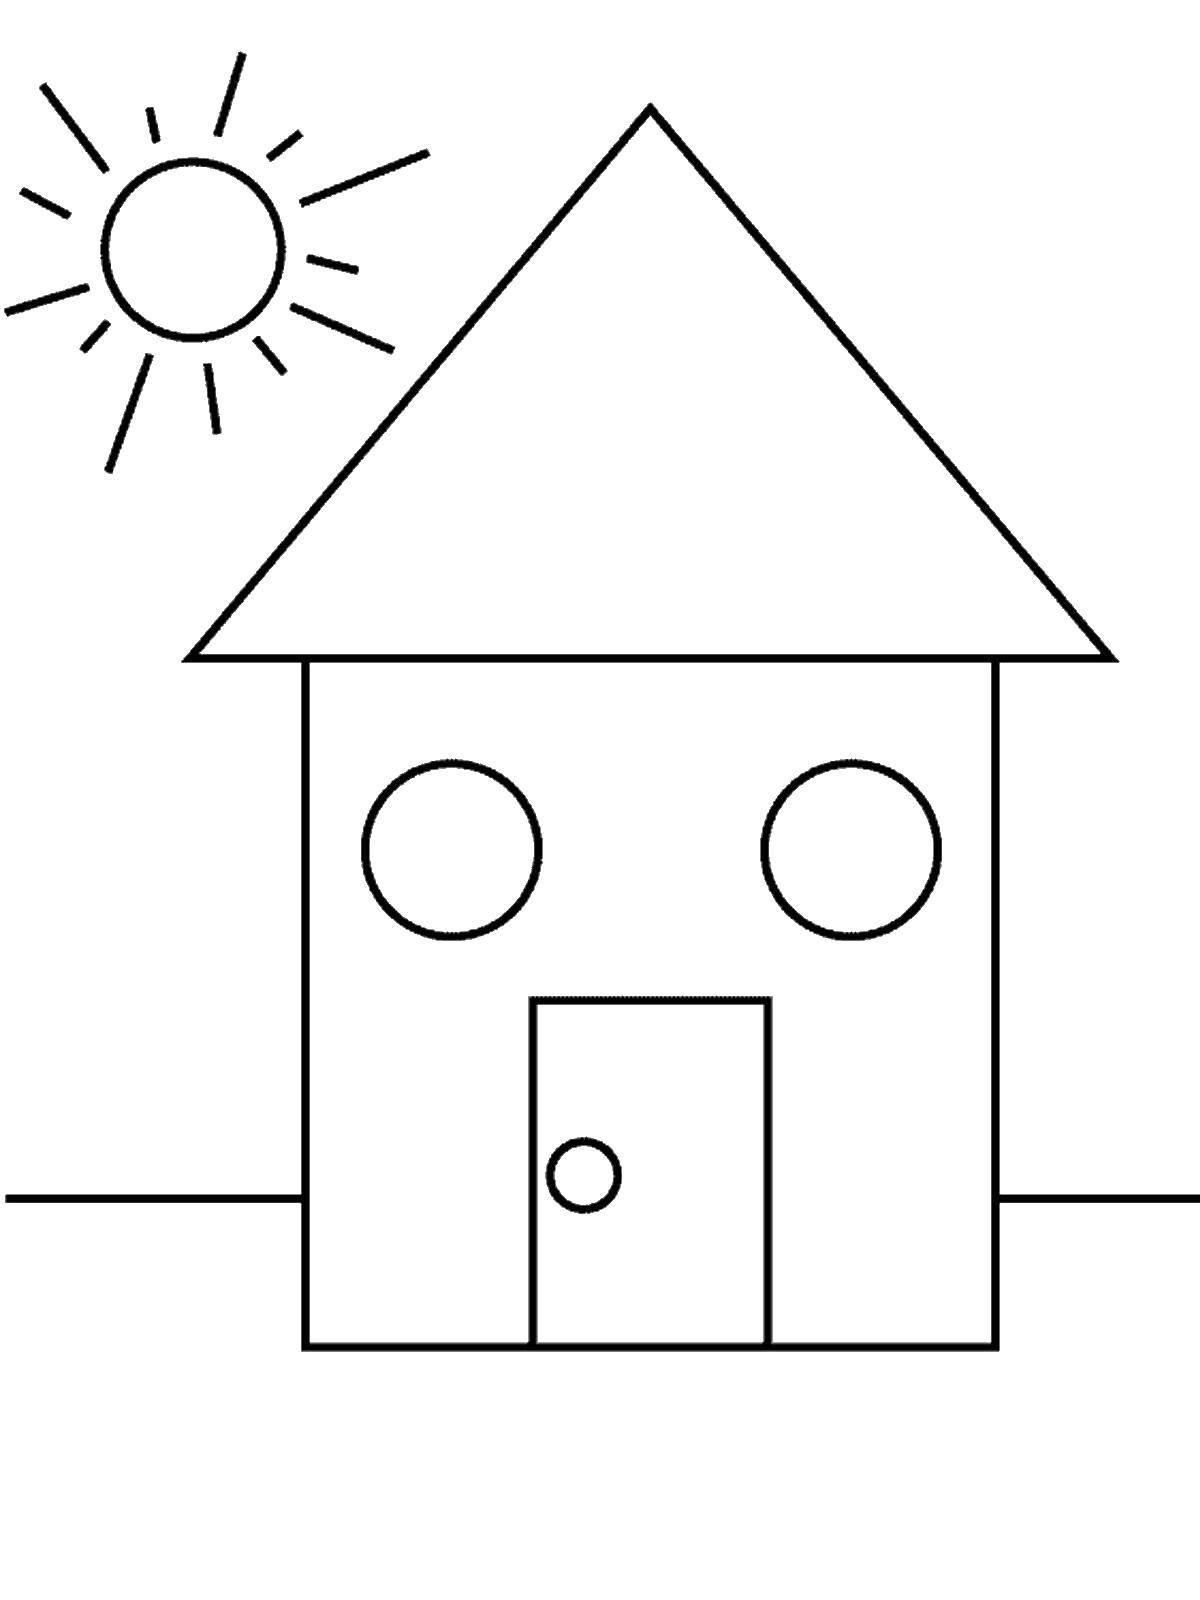 Раскраски из фигур дом, солнце (солнце)